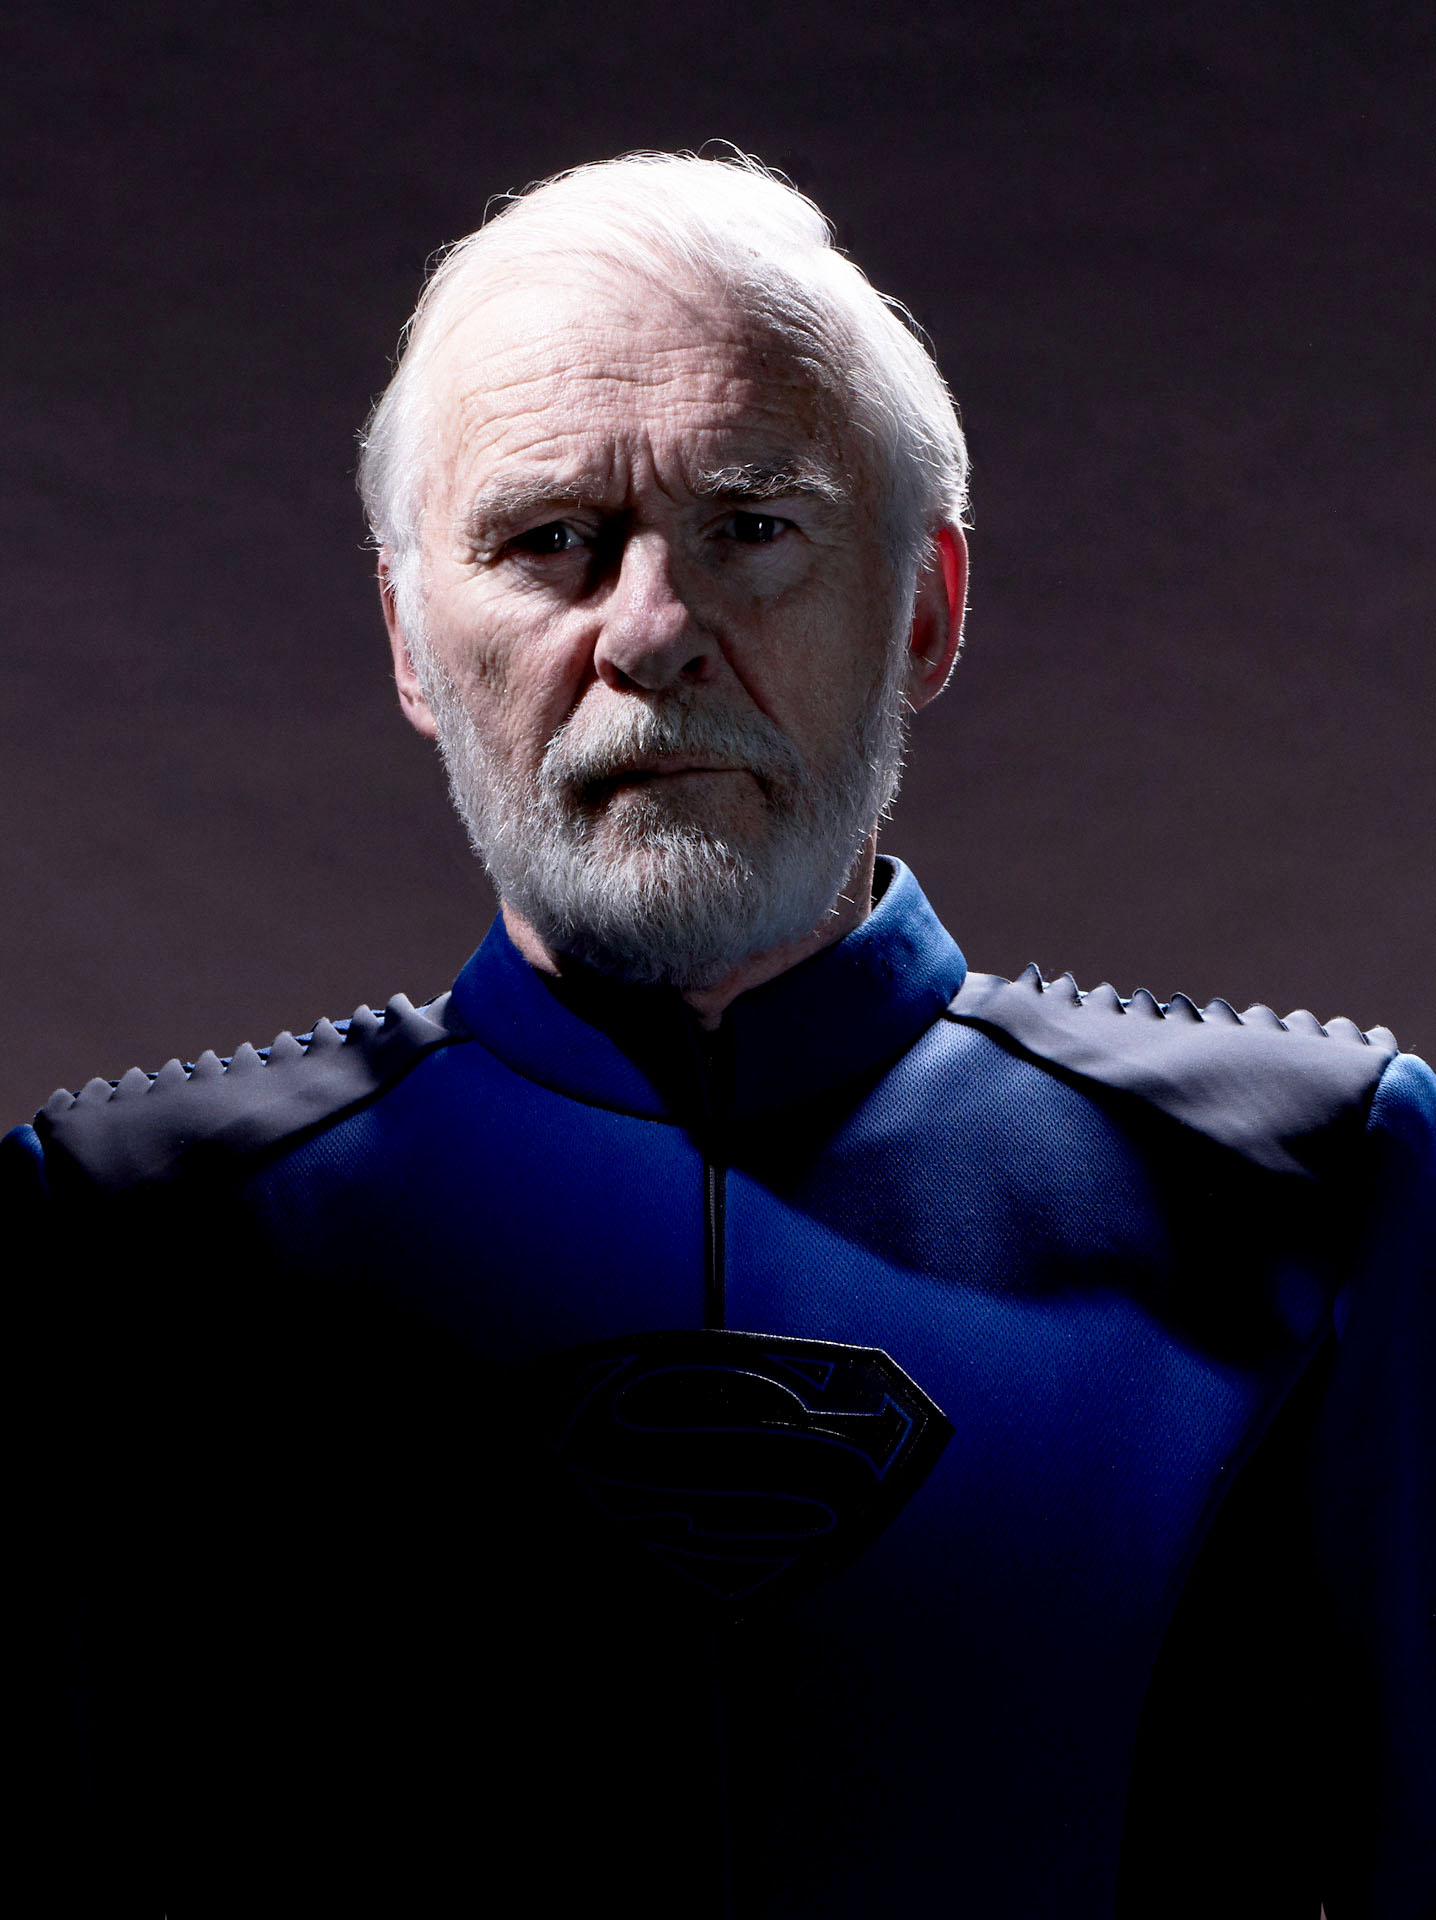 Val-El (Ian McElhinney)<br /><br />Seg nagyapja és Krypton egyik legnagyobb tudósa. Val kulcsszerepet játszott Krypton legeredményesebb fejlődési korszakában, mielőtt árulásért száműzték. Tizennégy év távollét után visszatér, hogy a Kryptont fenyegető veszély elleni küzdelem meghatározó alakja legyen.